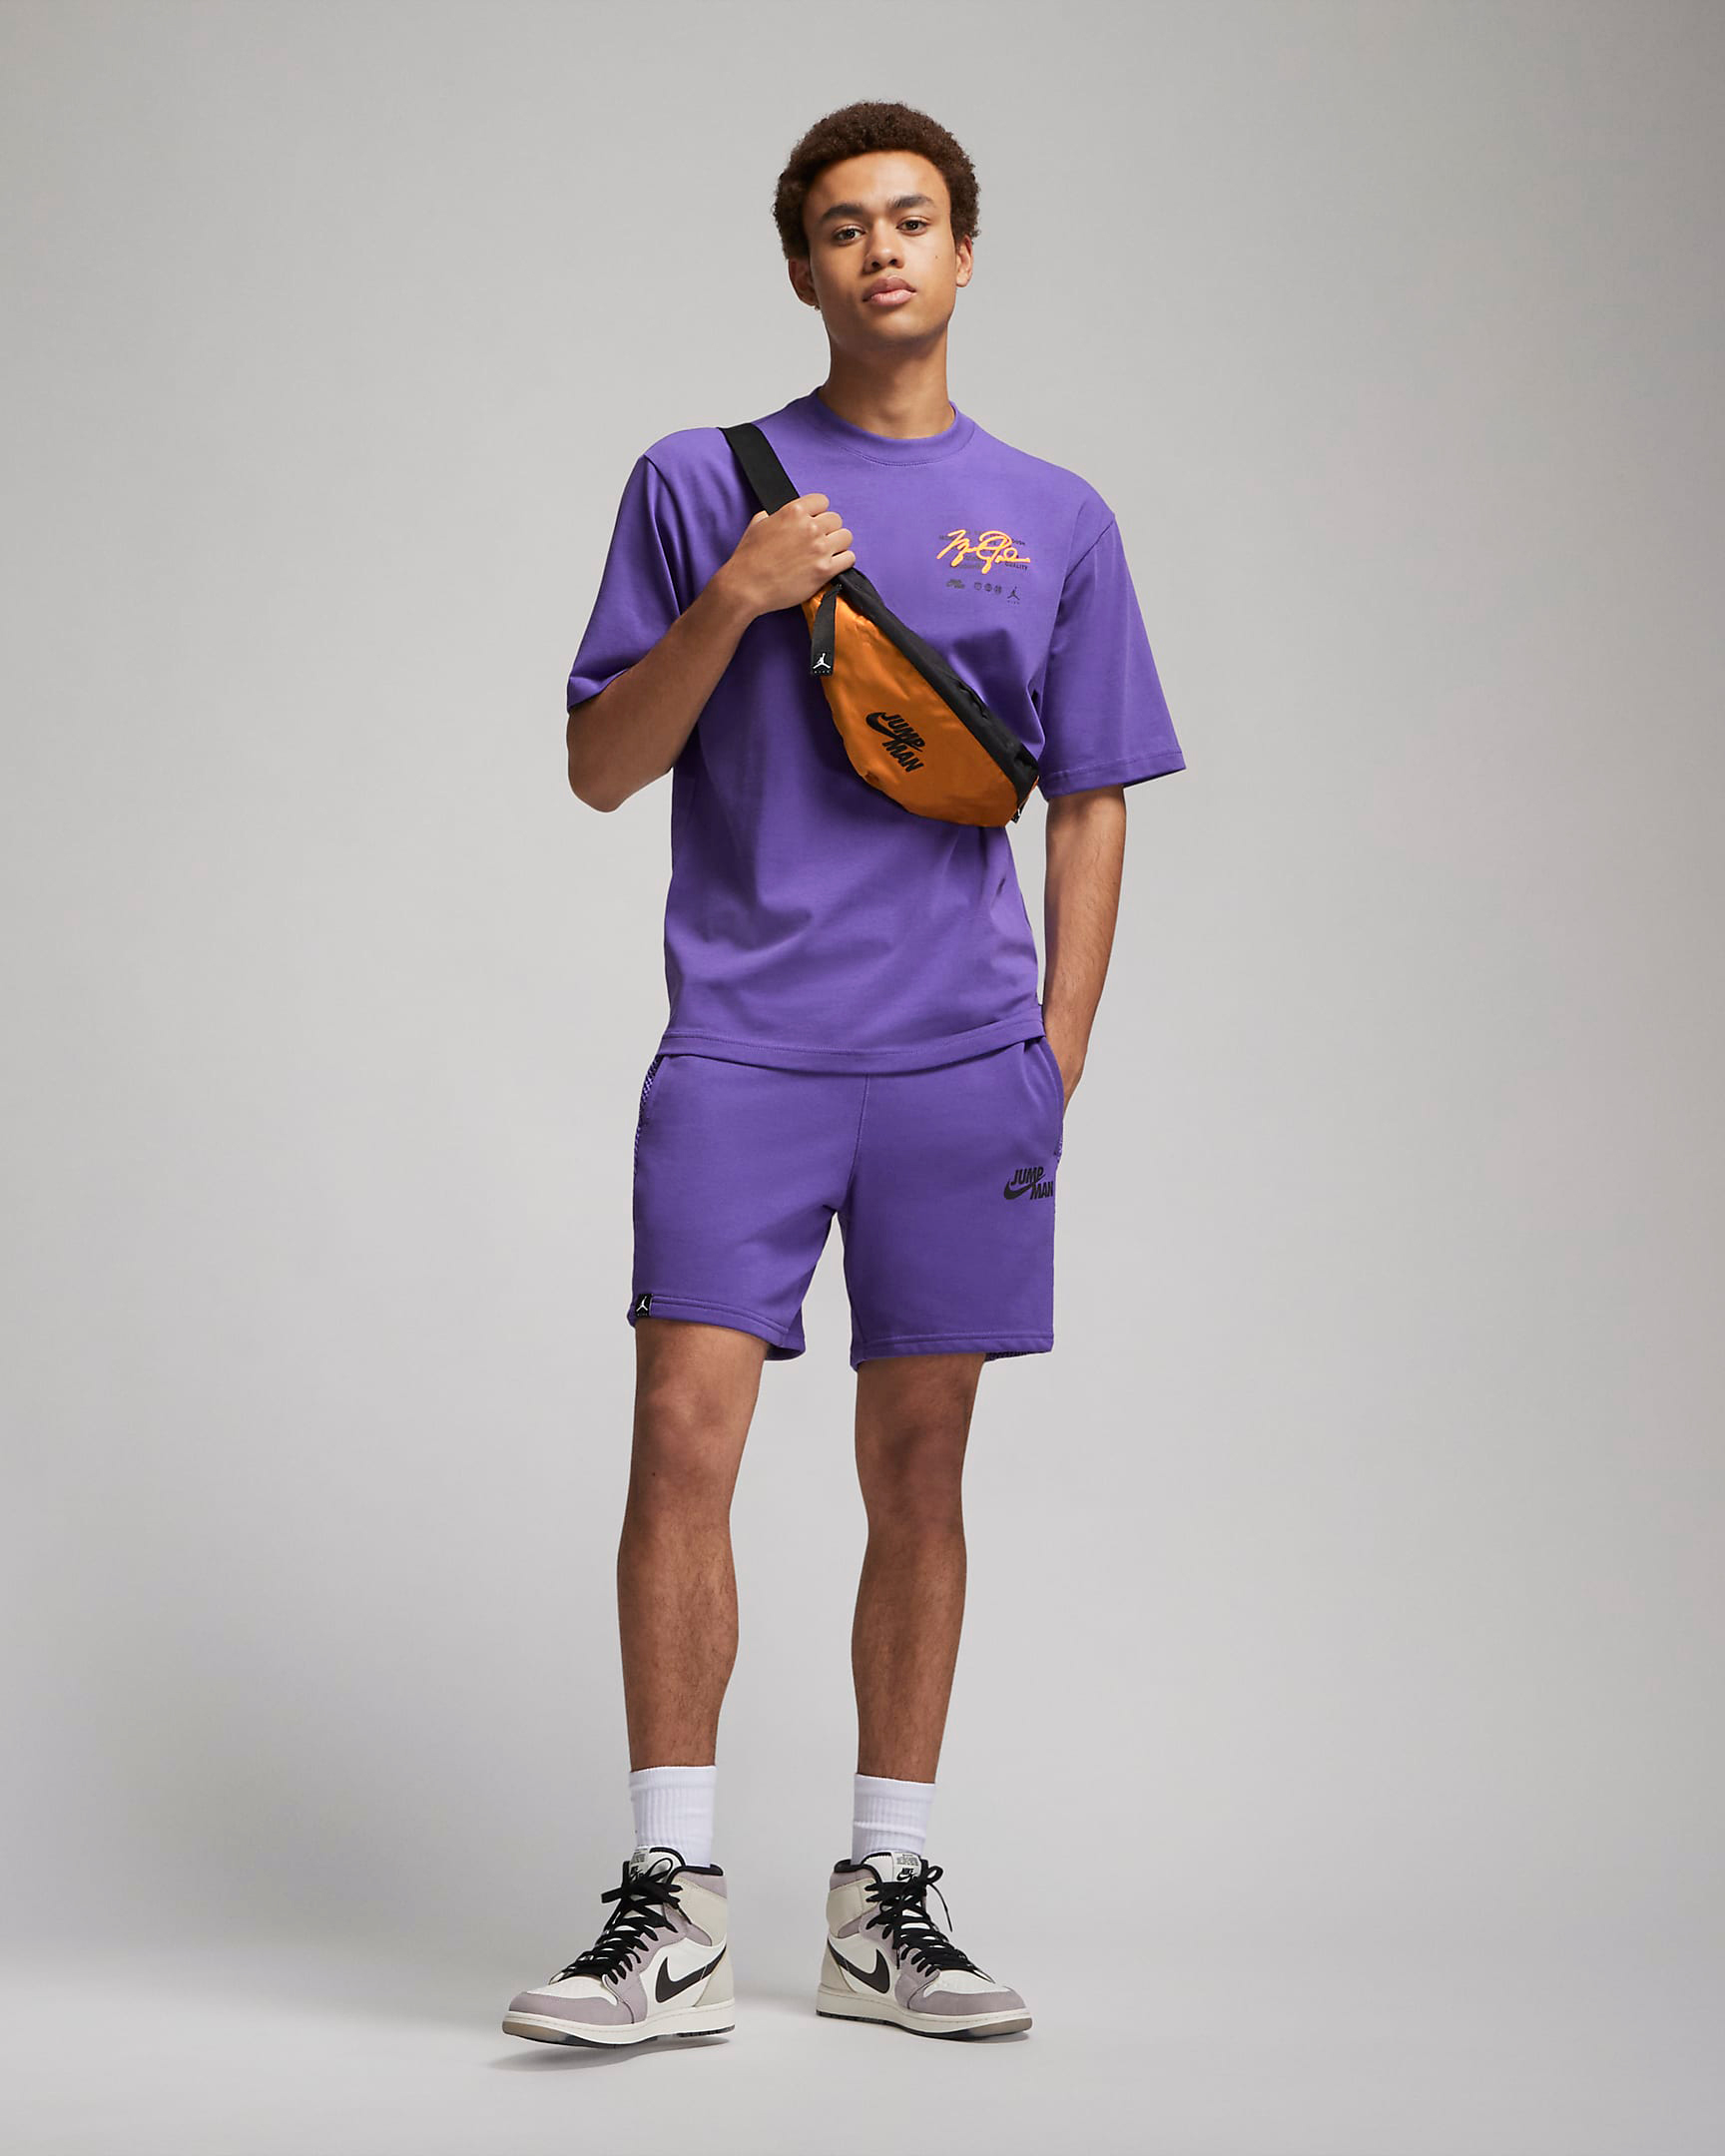 jordan-dark-iris-jumpman-shirt-shorts-outfit